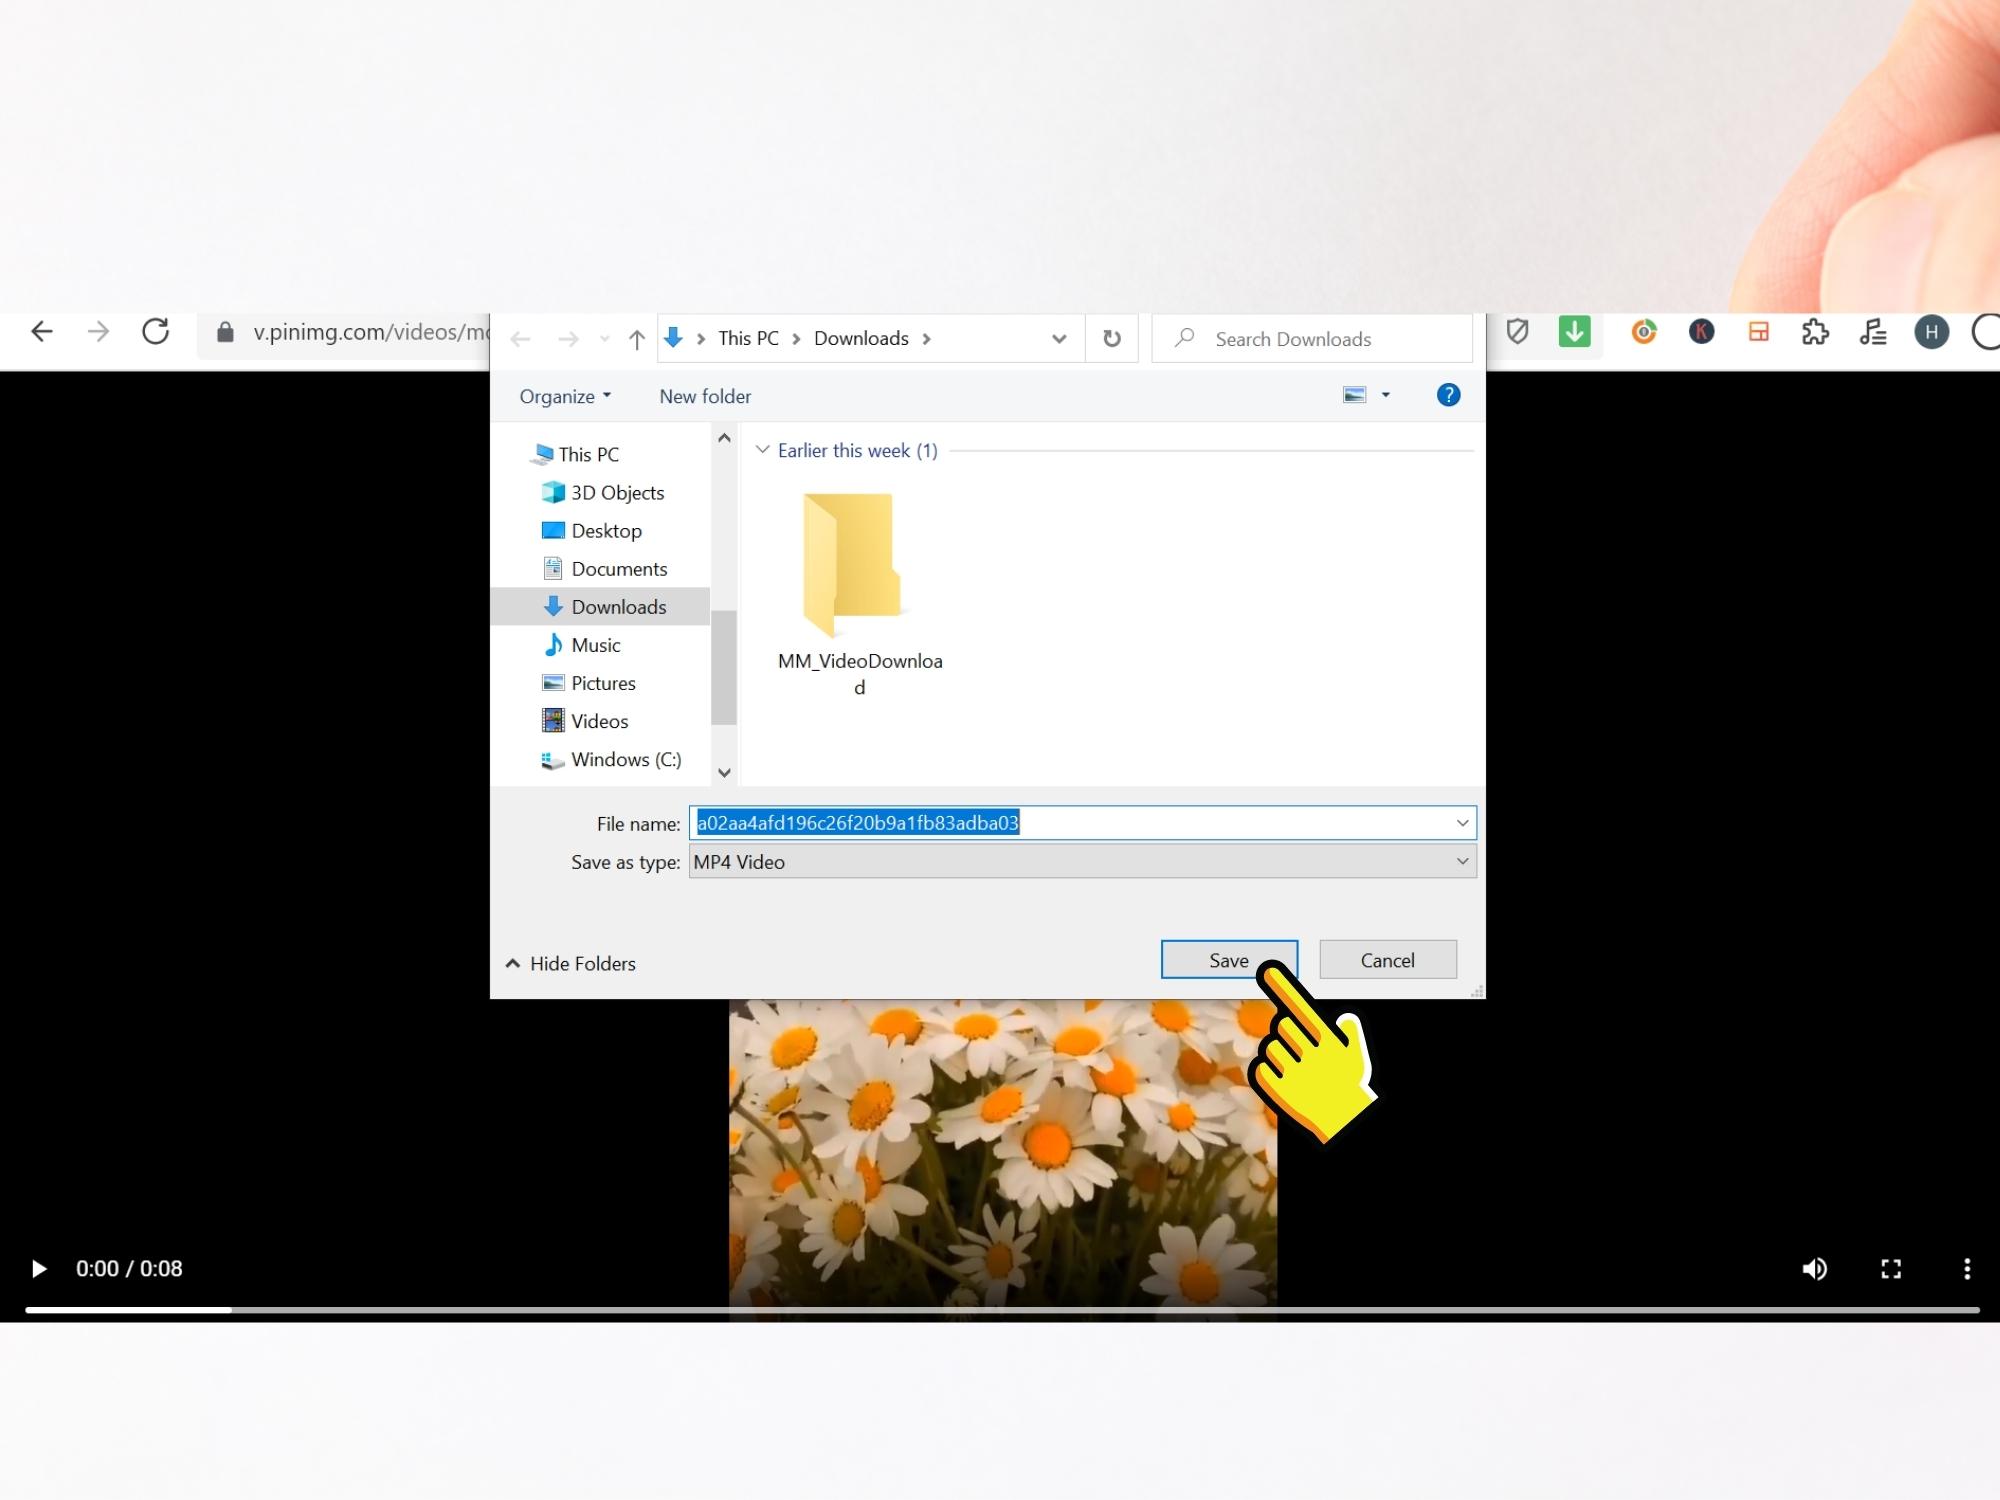 Sforum - Trang thông tin công nghệ mới nhất 18-2 Hướng dẫn cách tải video Pinterest về điện thoại và máy tính trong tích tắc 